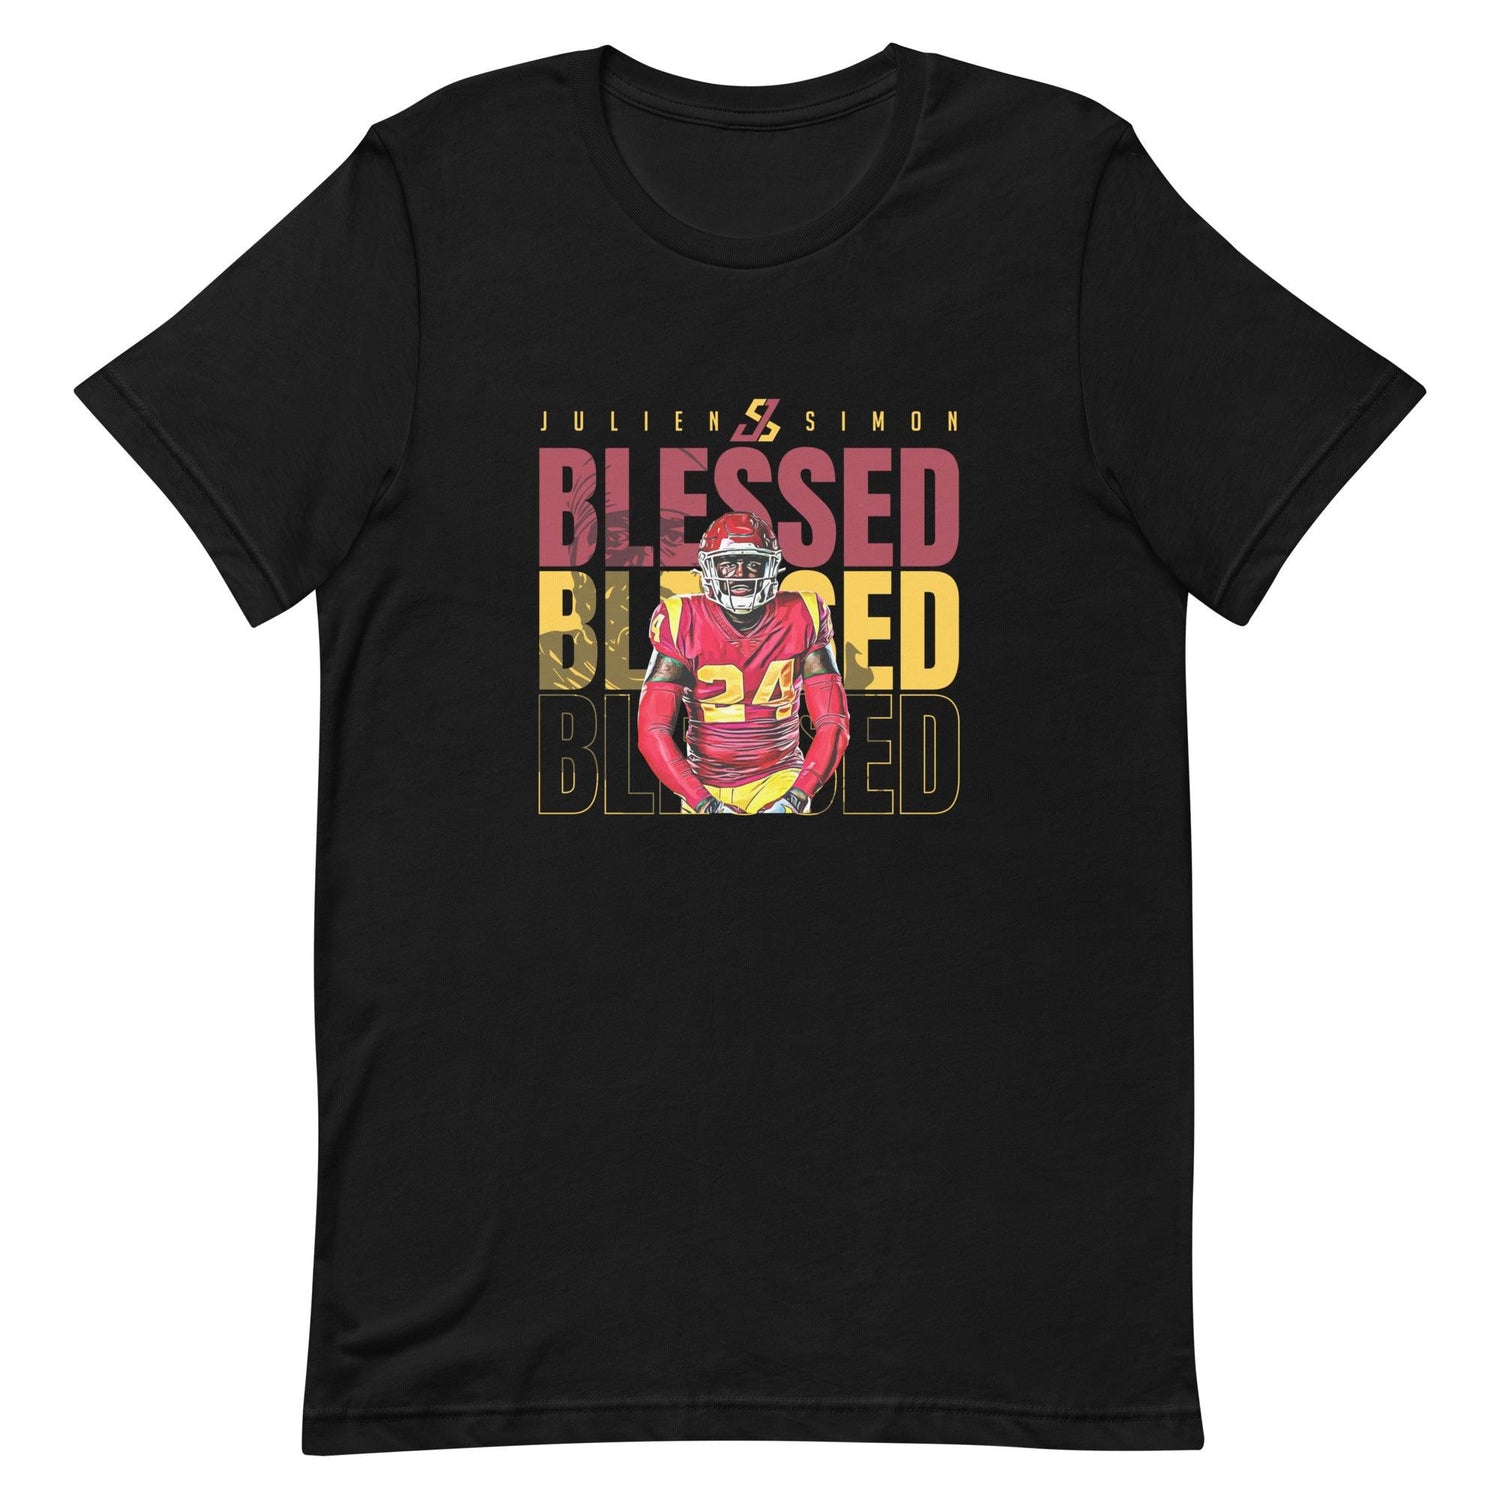 Julien Simon "Blessed" t-shirt - Fan Arch